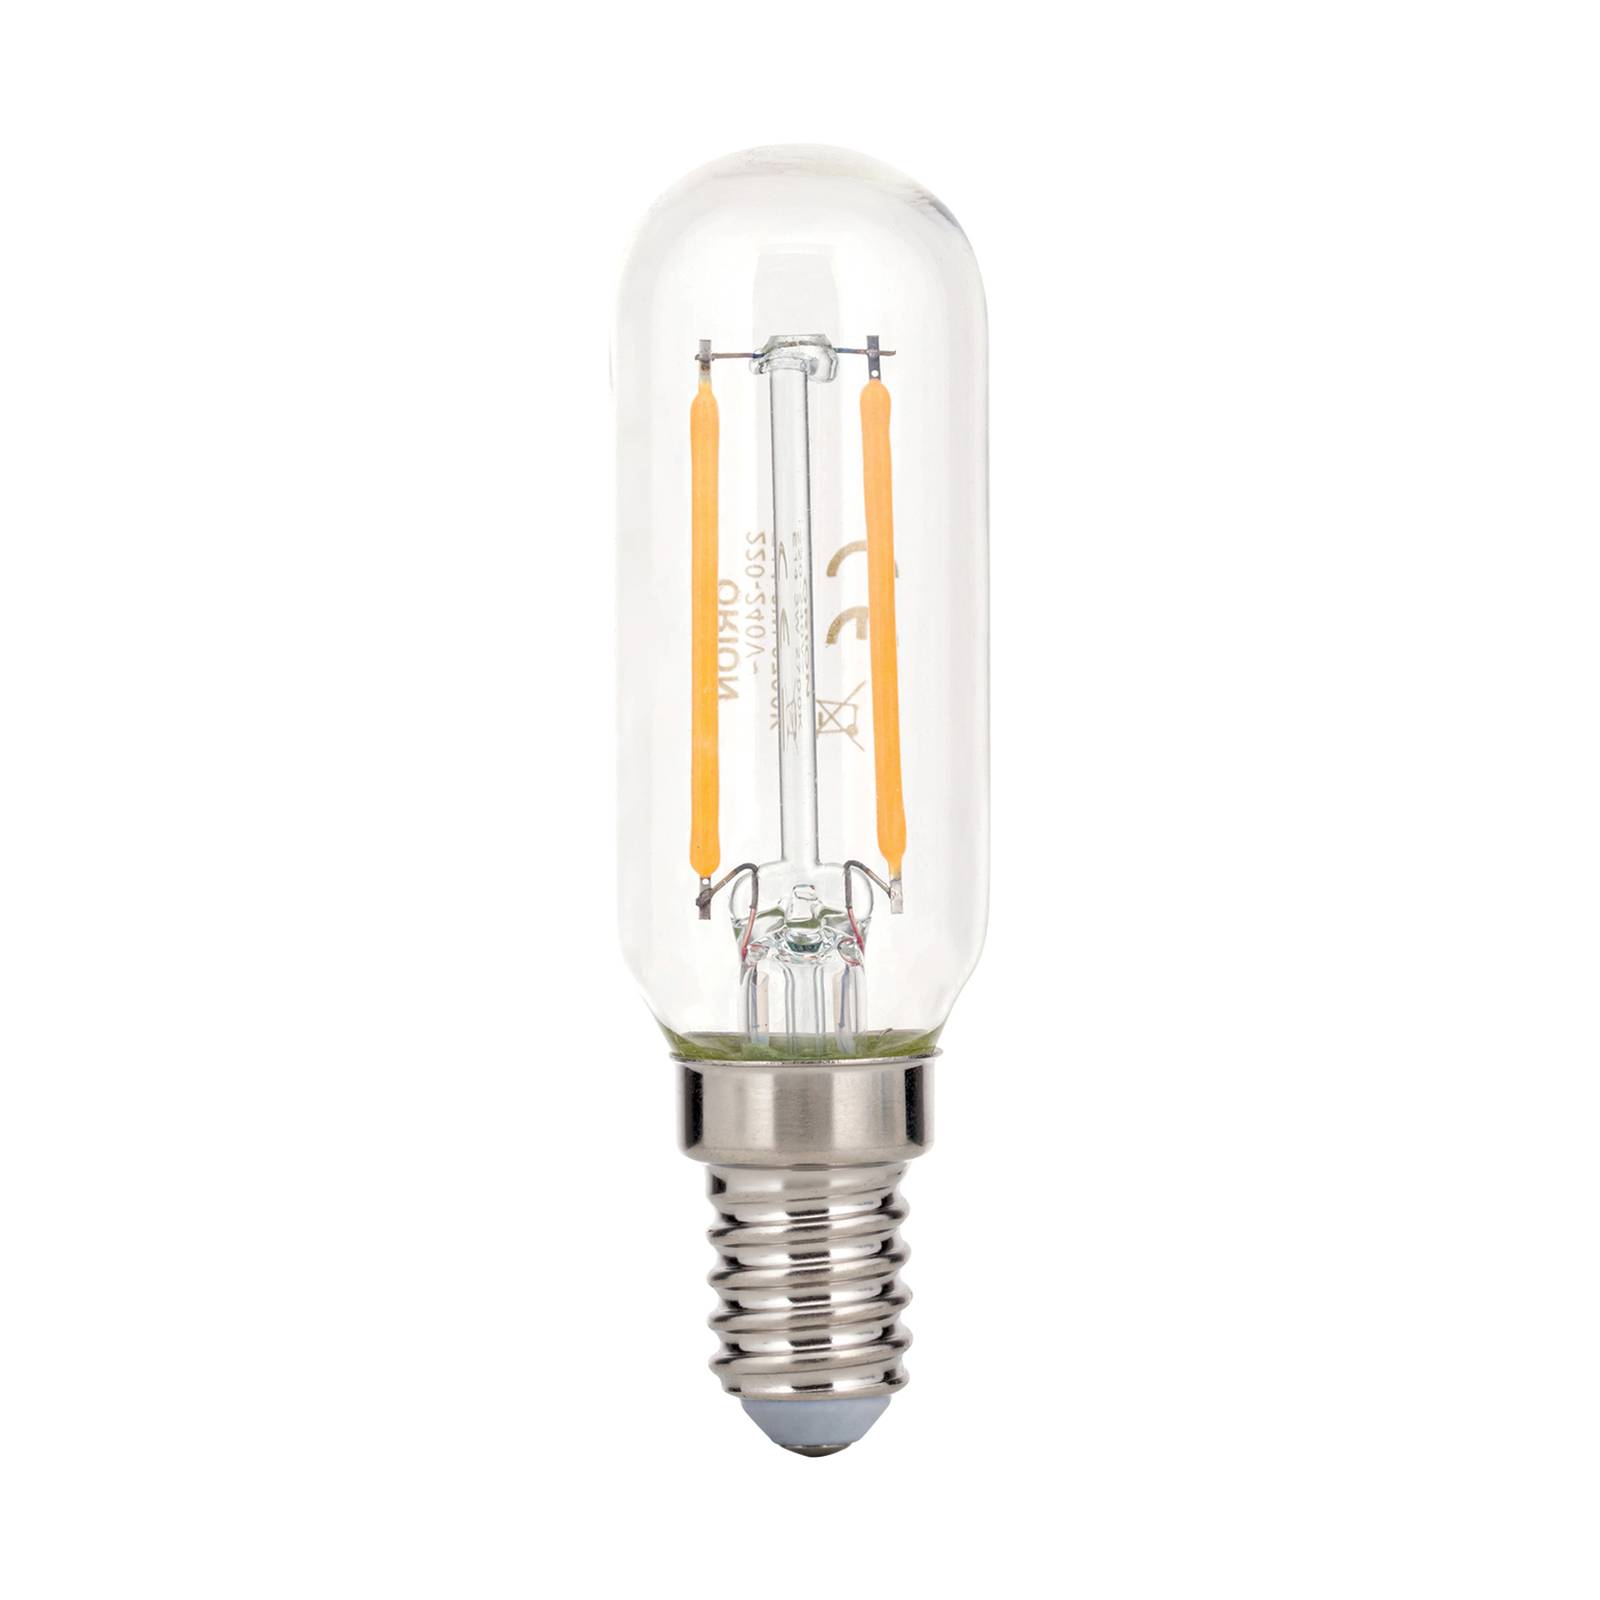 ORION LED-lampa E14 3W T25 filament 2 700 K klar